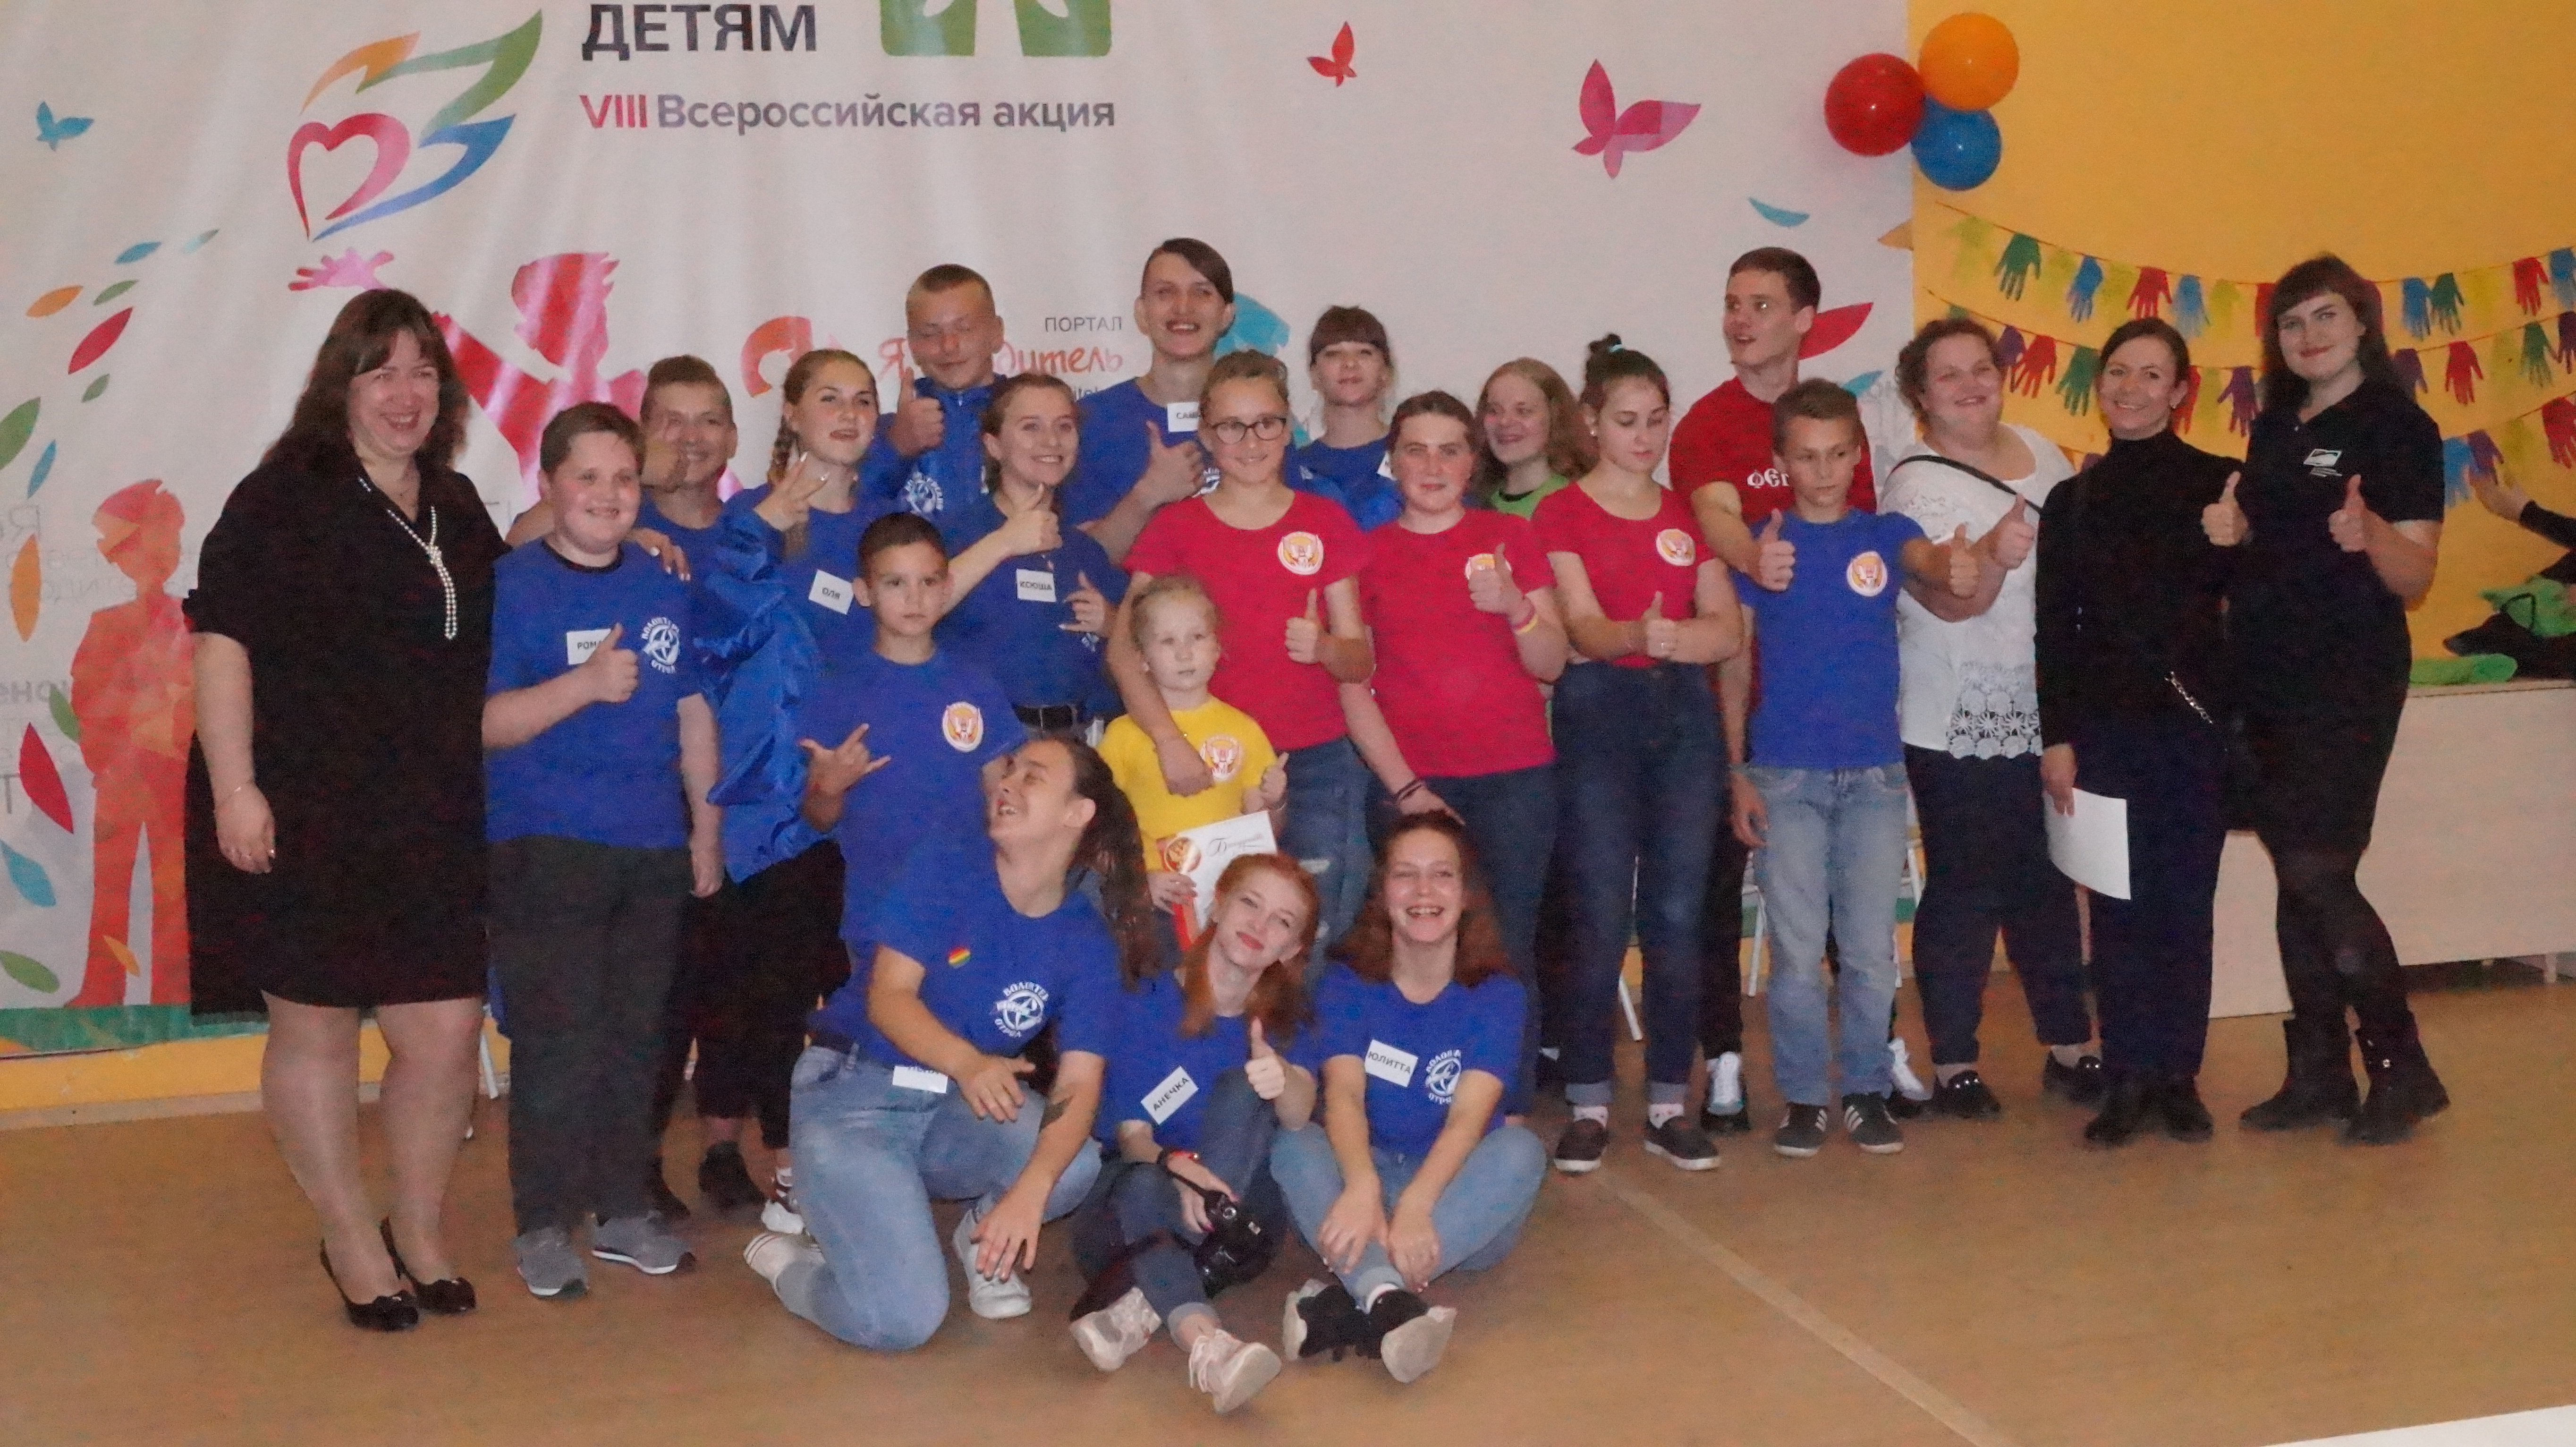 16 сентября 2019 года состоялось финальное мероприятие VIII Всероссийской акции "Добровольцы - детям"